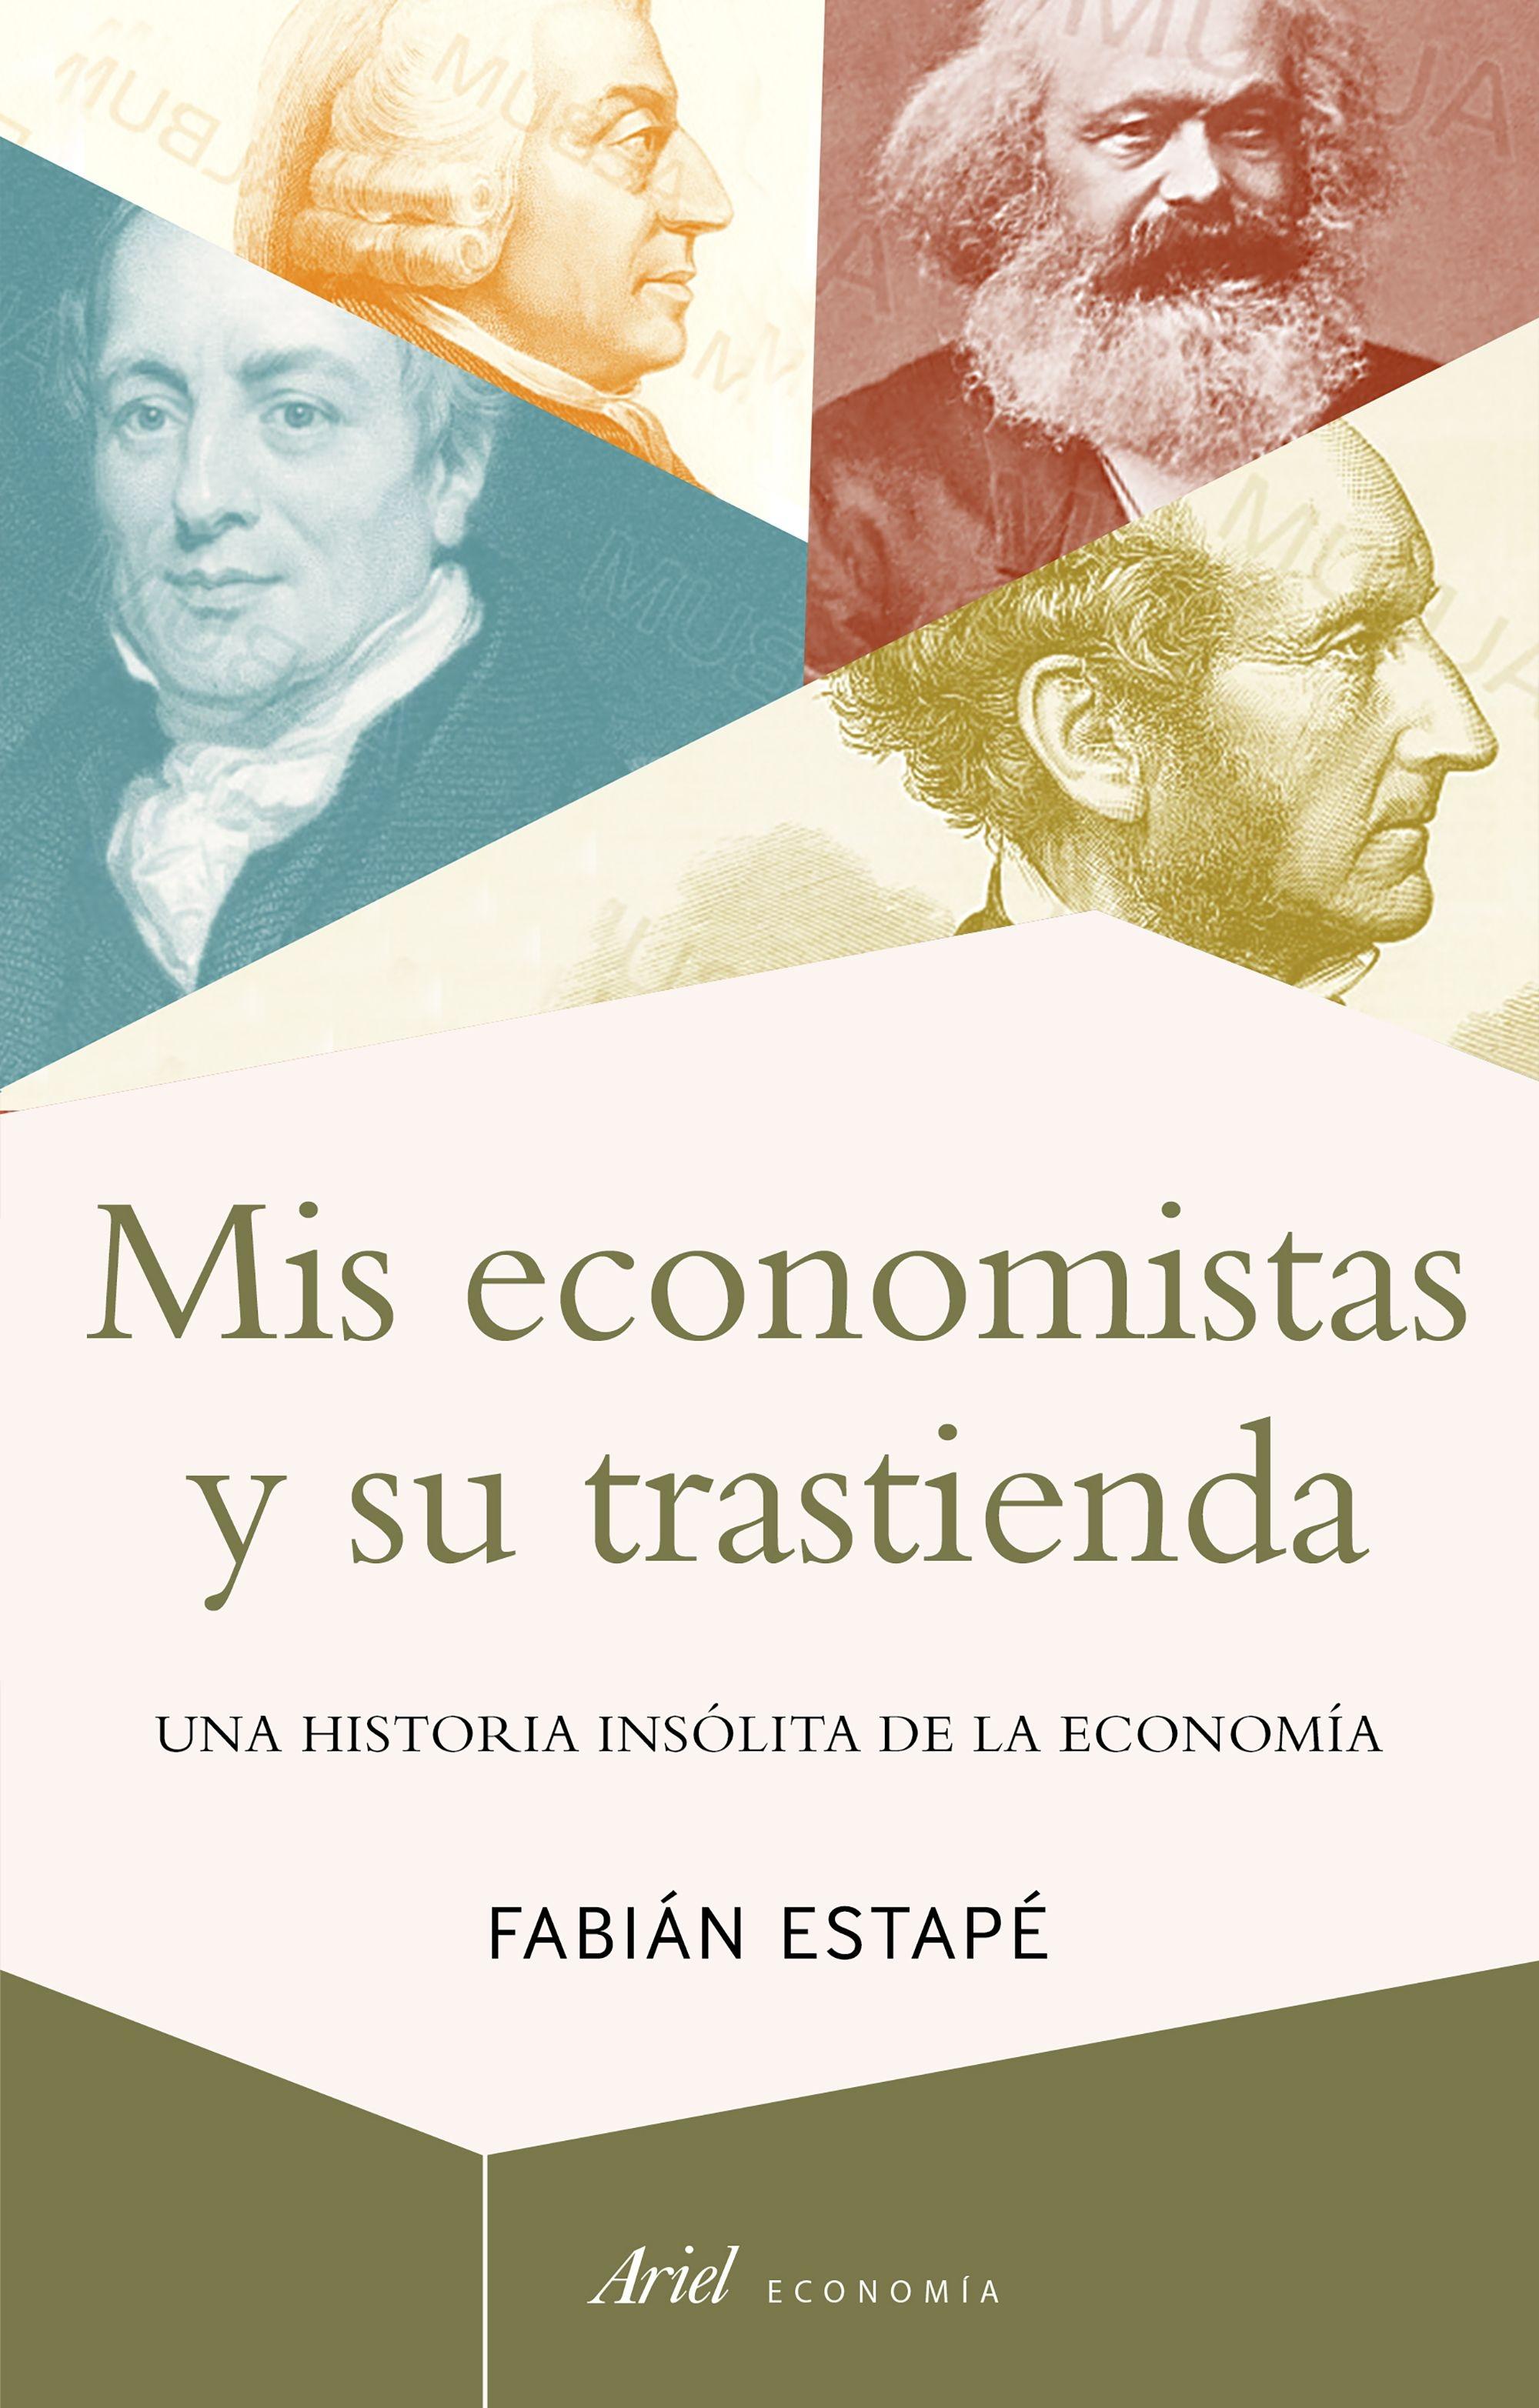 Mis economistas y su trastienda "Una historia insólita de la economía"